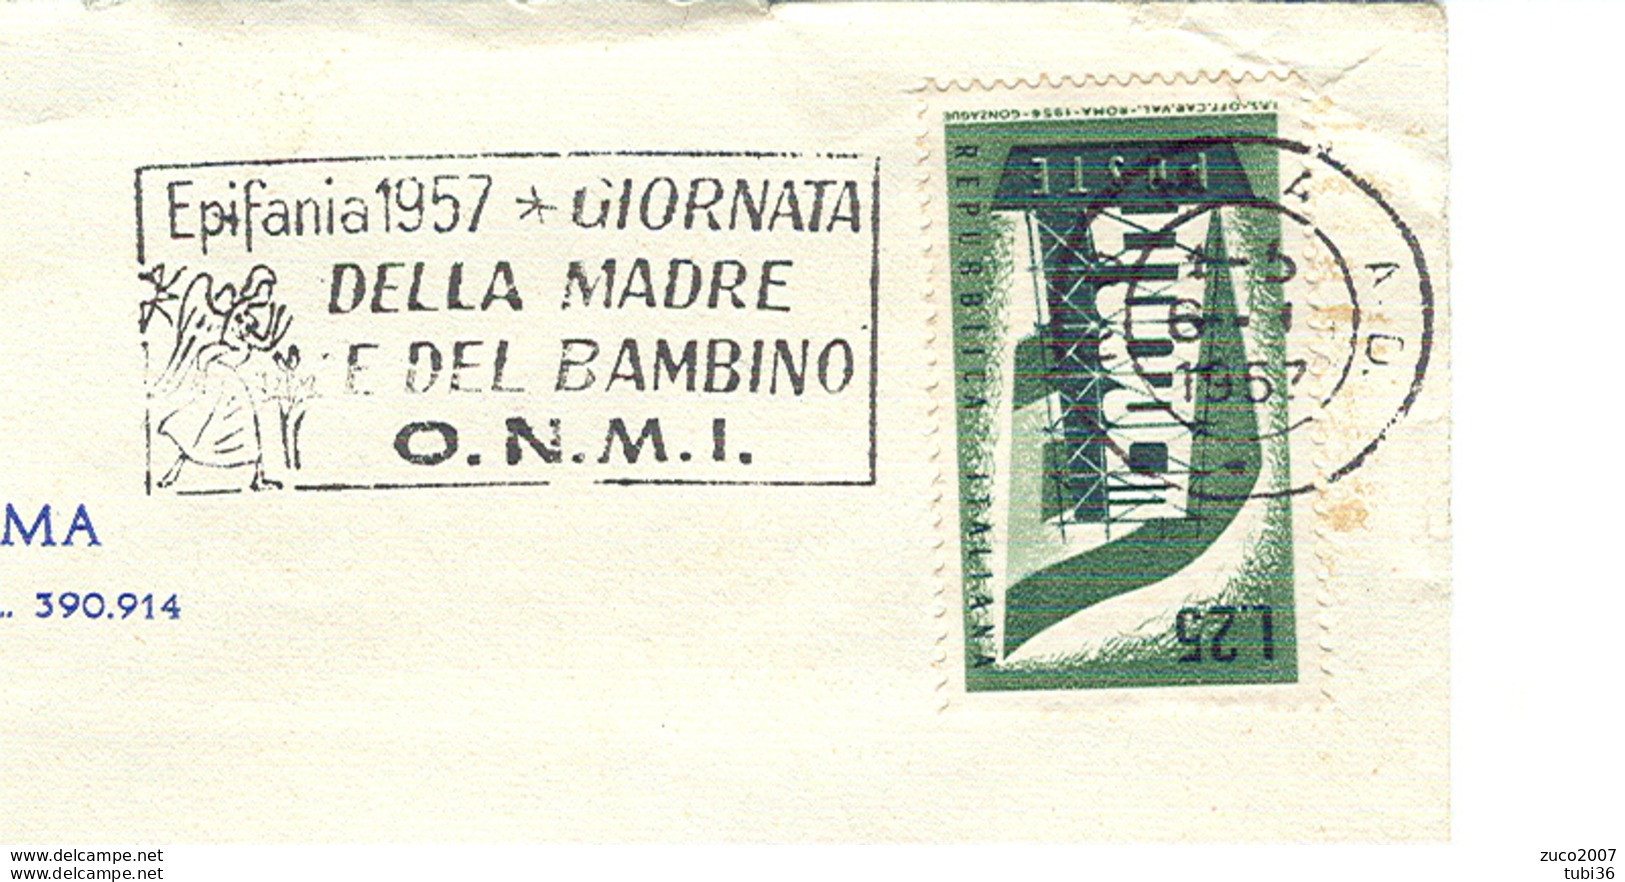 EPIFANIA 1957, GIORNATA DELLA MADRE E DEL BAMBINO- O.N.M.I.- TIMBRO POSTE ROMA TARGHETTA,1957,CIRCOLO CANOTTIERI,ROMA, - Giorno Della Mamma